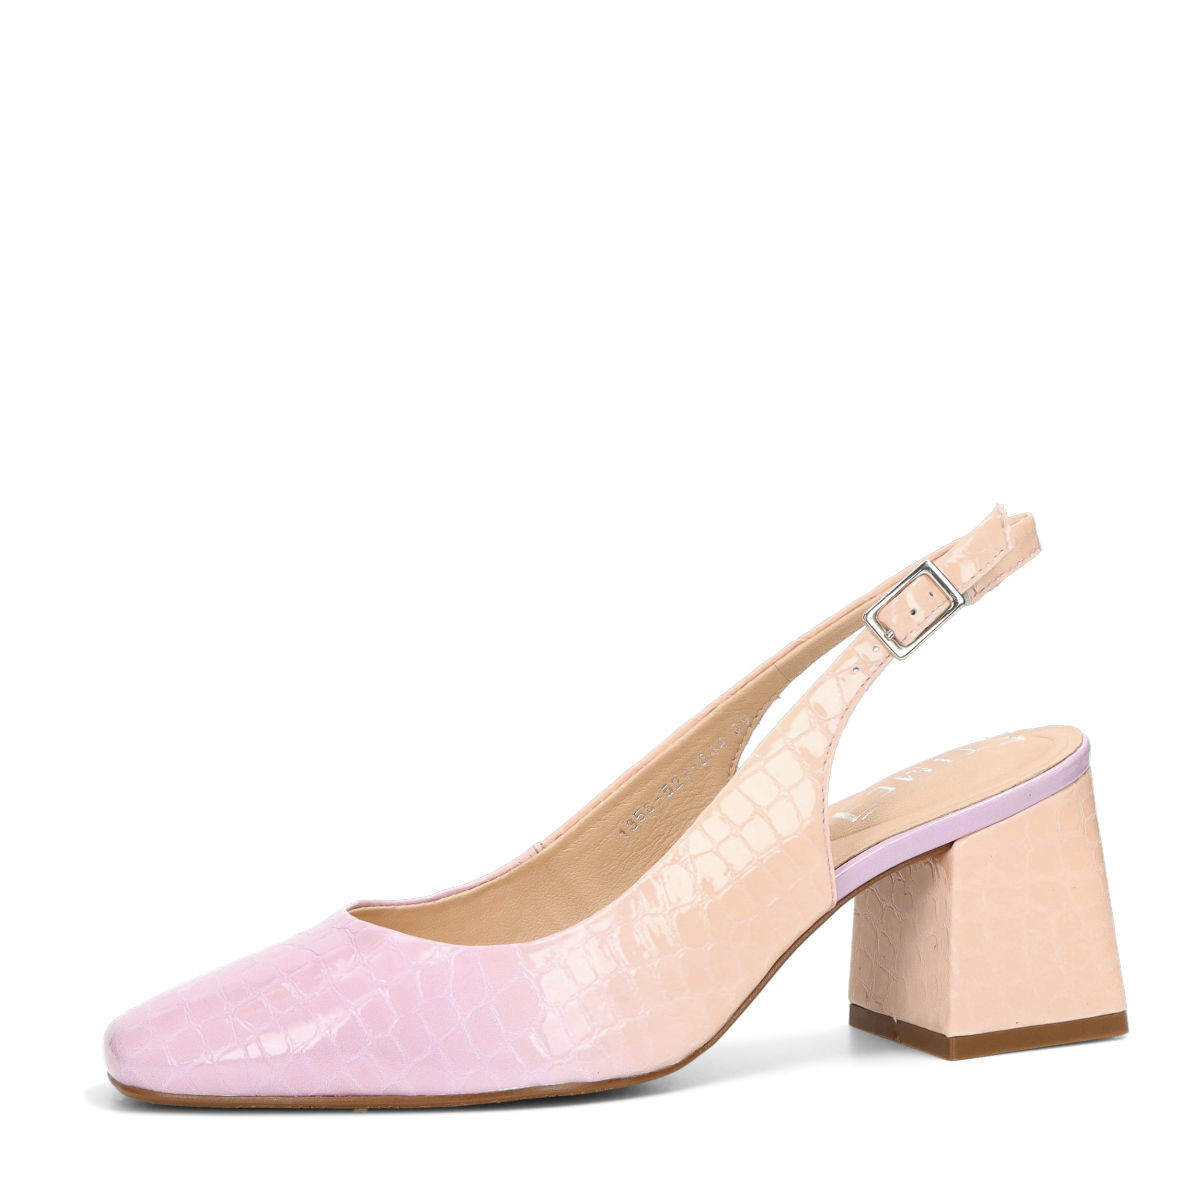 ETIMEĒ dámské stylové sandály - fialové - 36